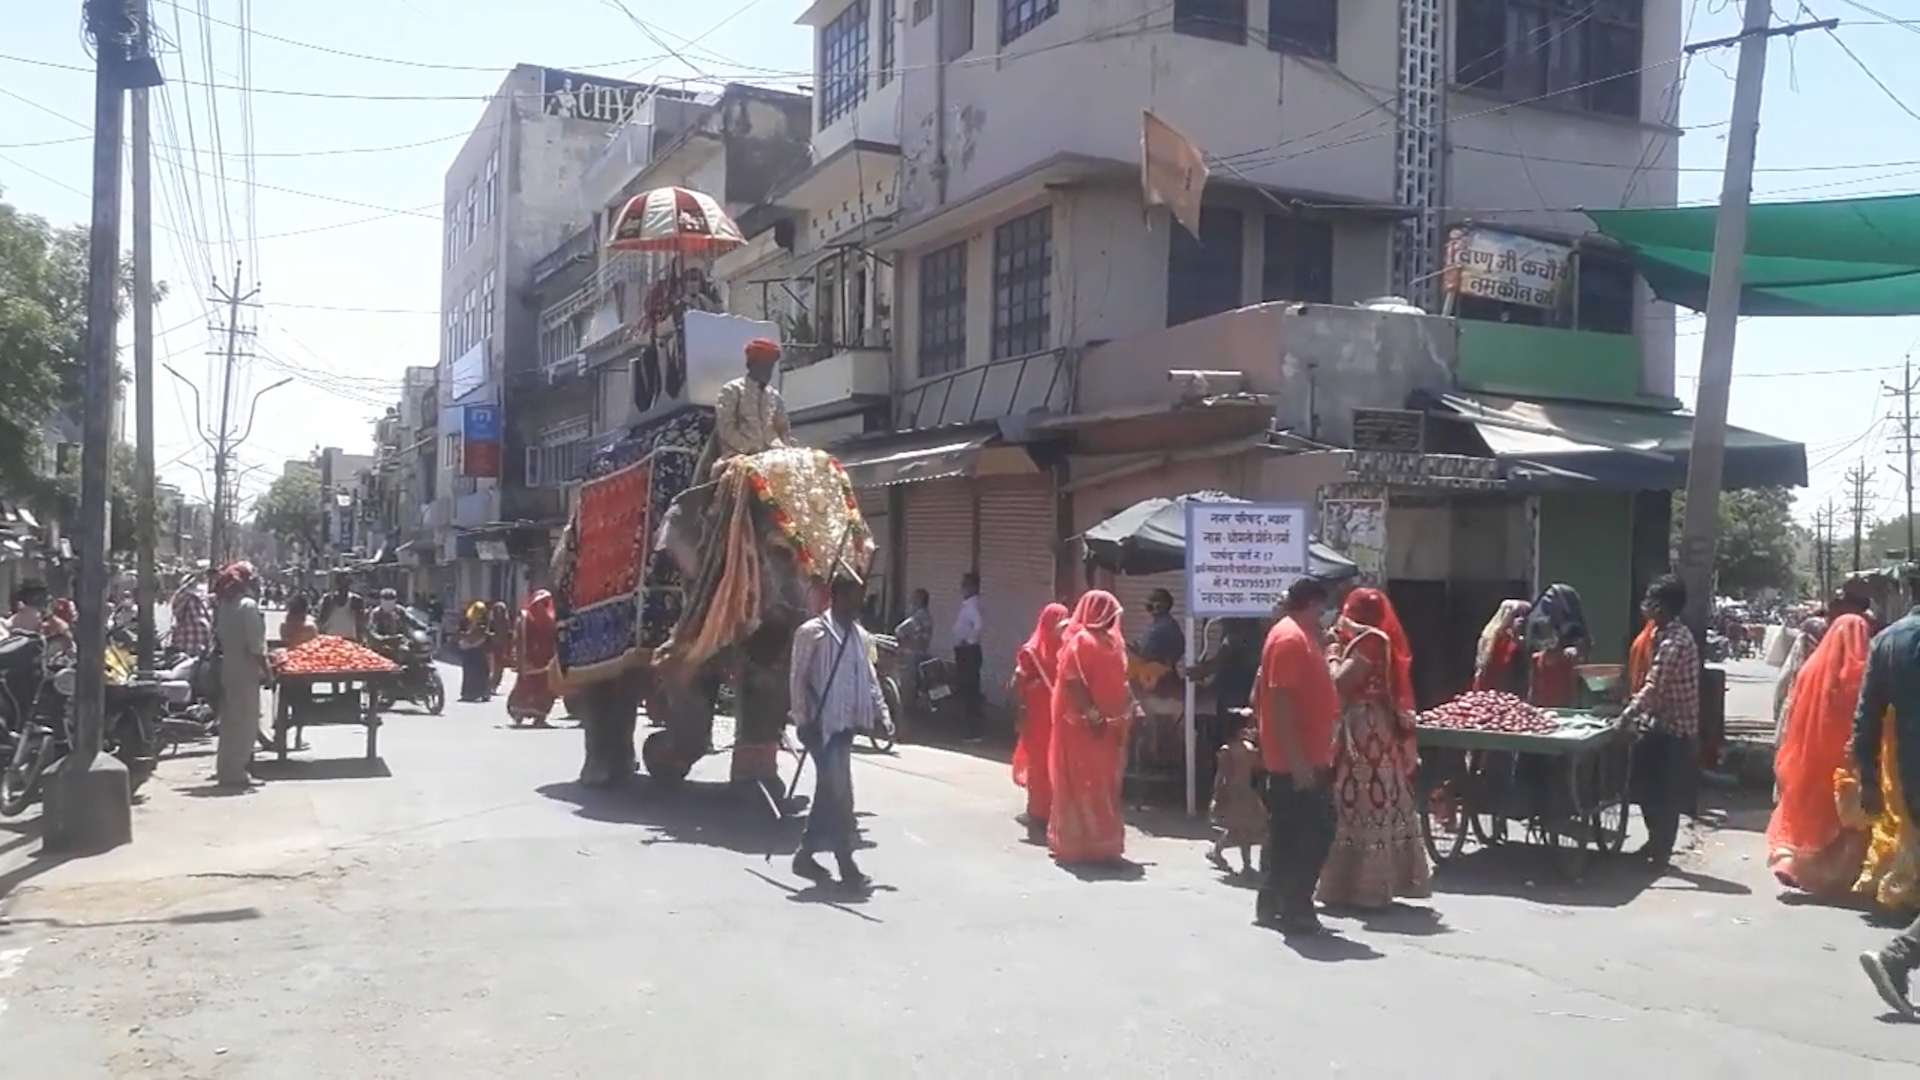 Bất chấp dịch bệnh, chú rể Ấn Độ vẫn cưỡi voi đi đón dâu - Ảnh 1